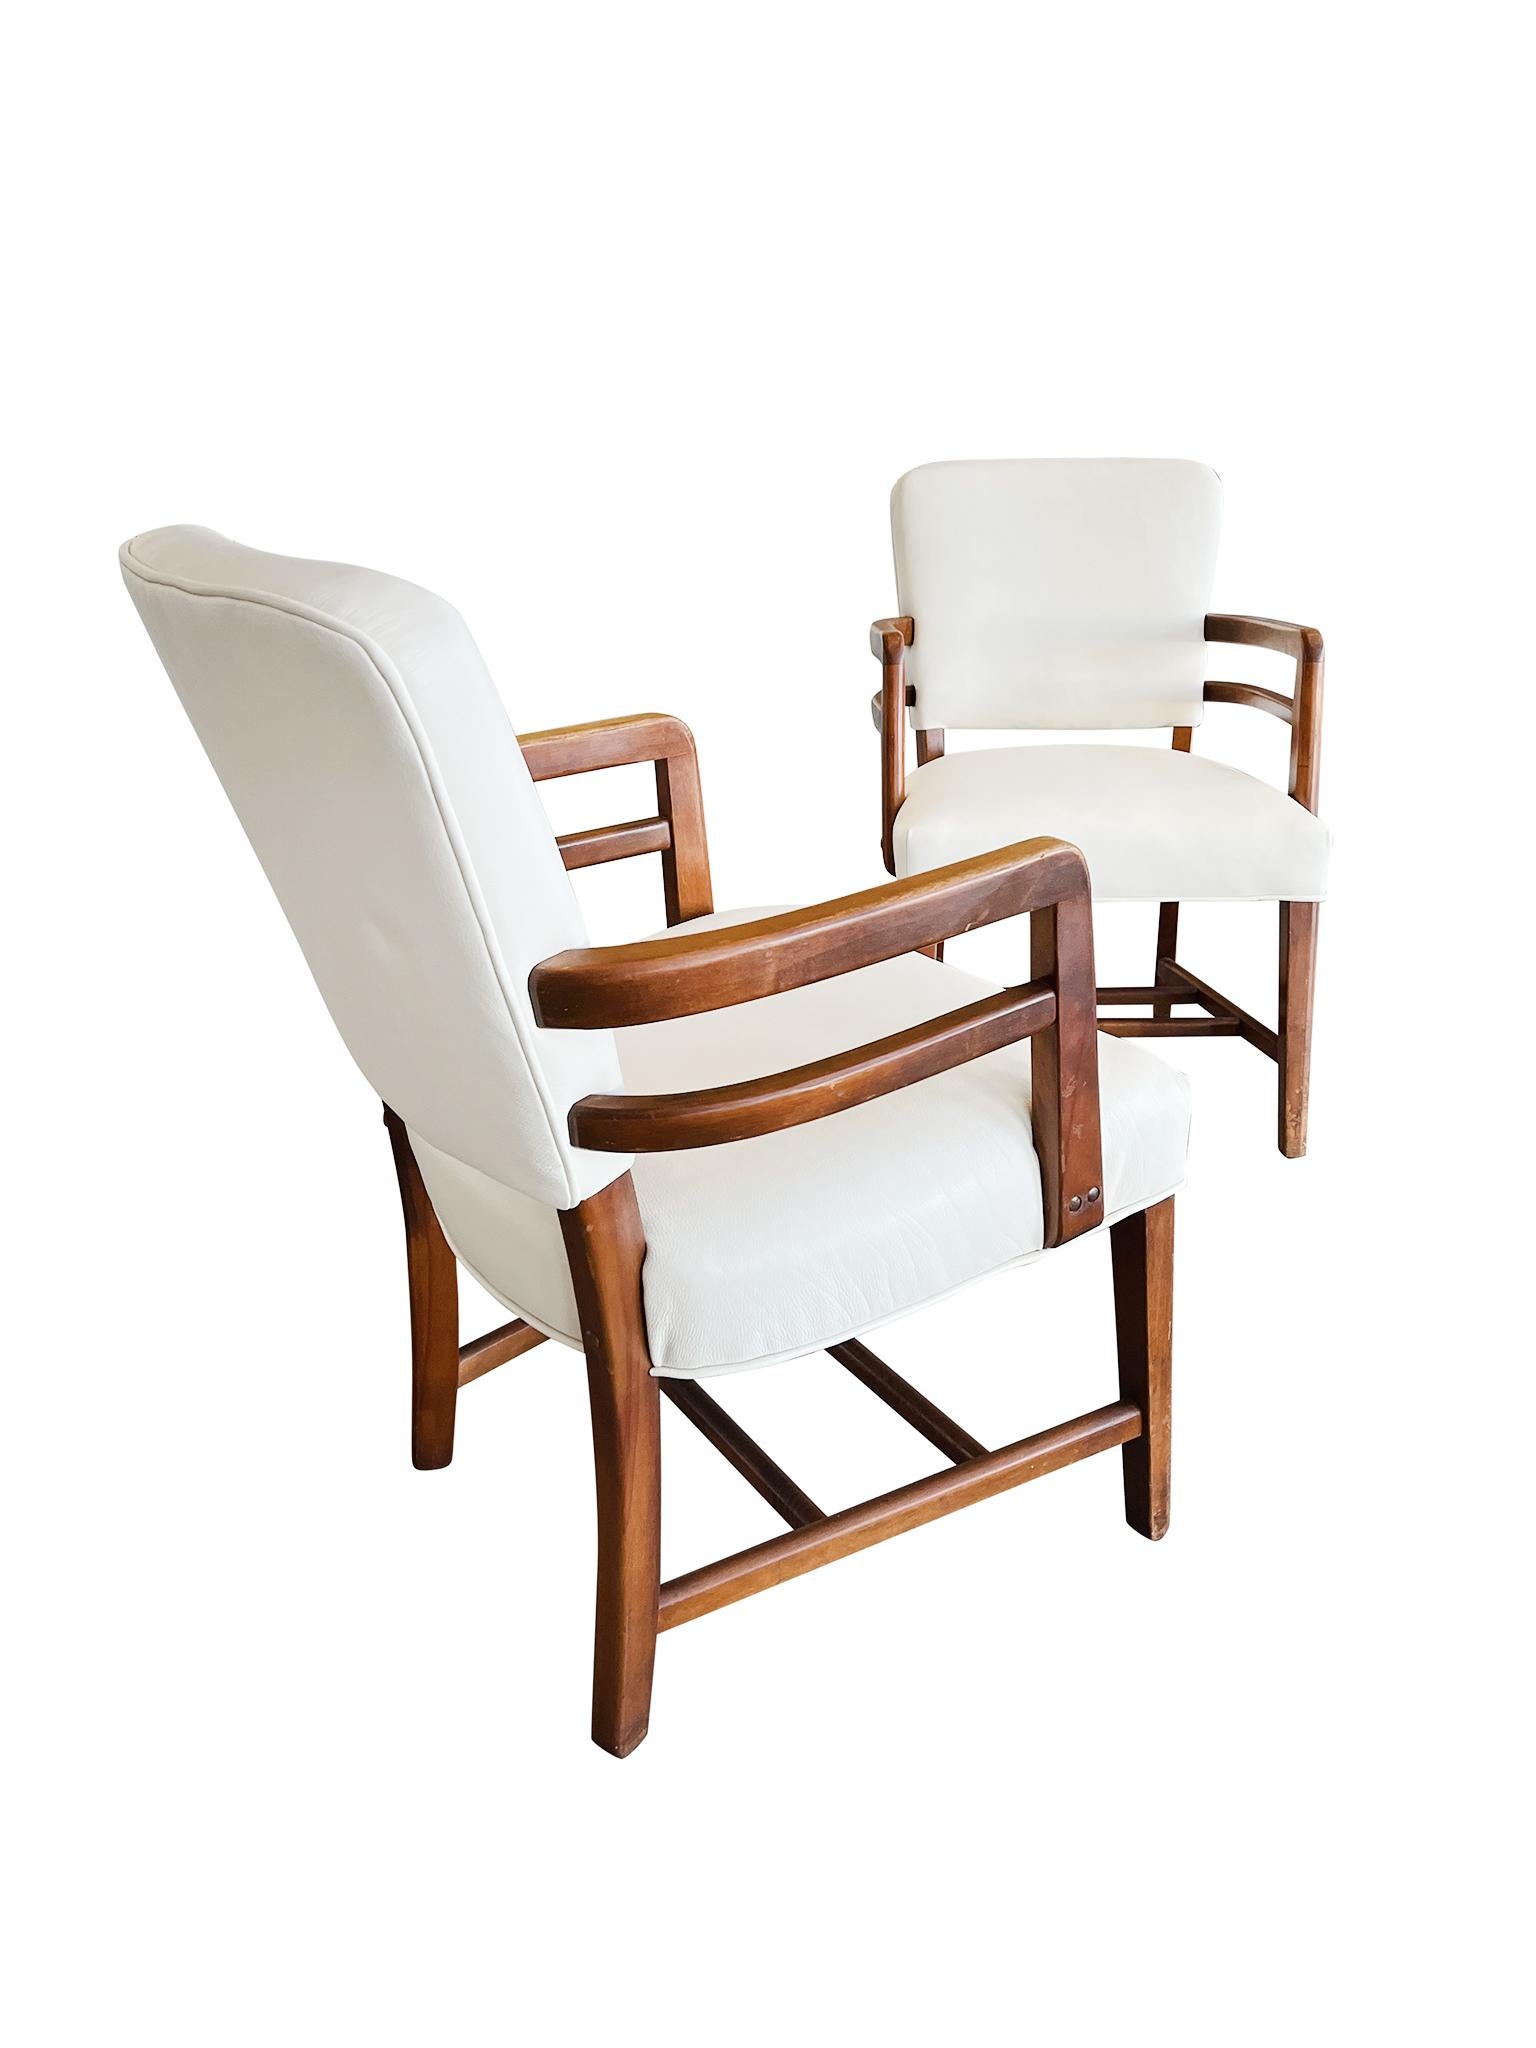 Exquise paire de fauteuils Art Déco anglais, fabriqués dans les années 1930 en bois de hêtre. Les chaises ont été récemment retapissées en cuir blanc huître, qui s'harmonise parfaitement avec les tons chauds du bois. Le travail du bois est